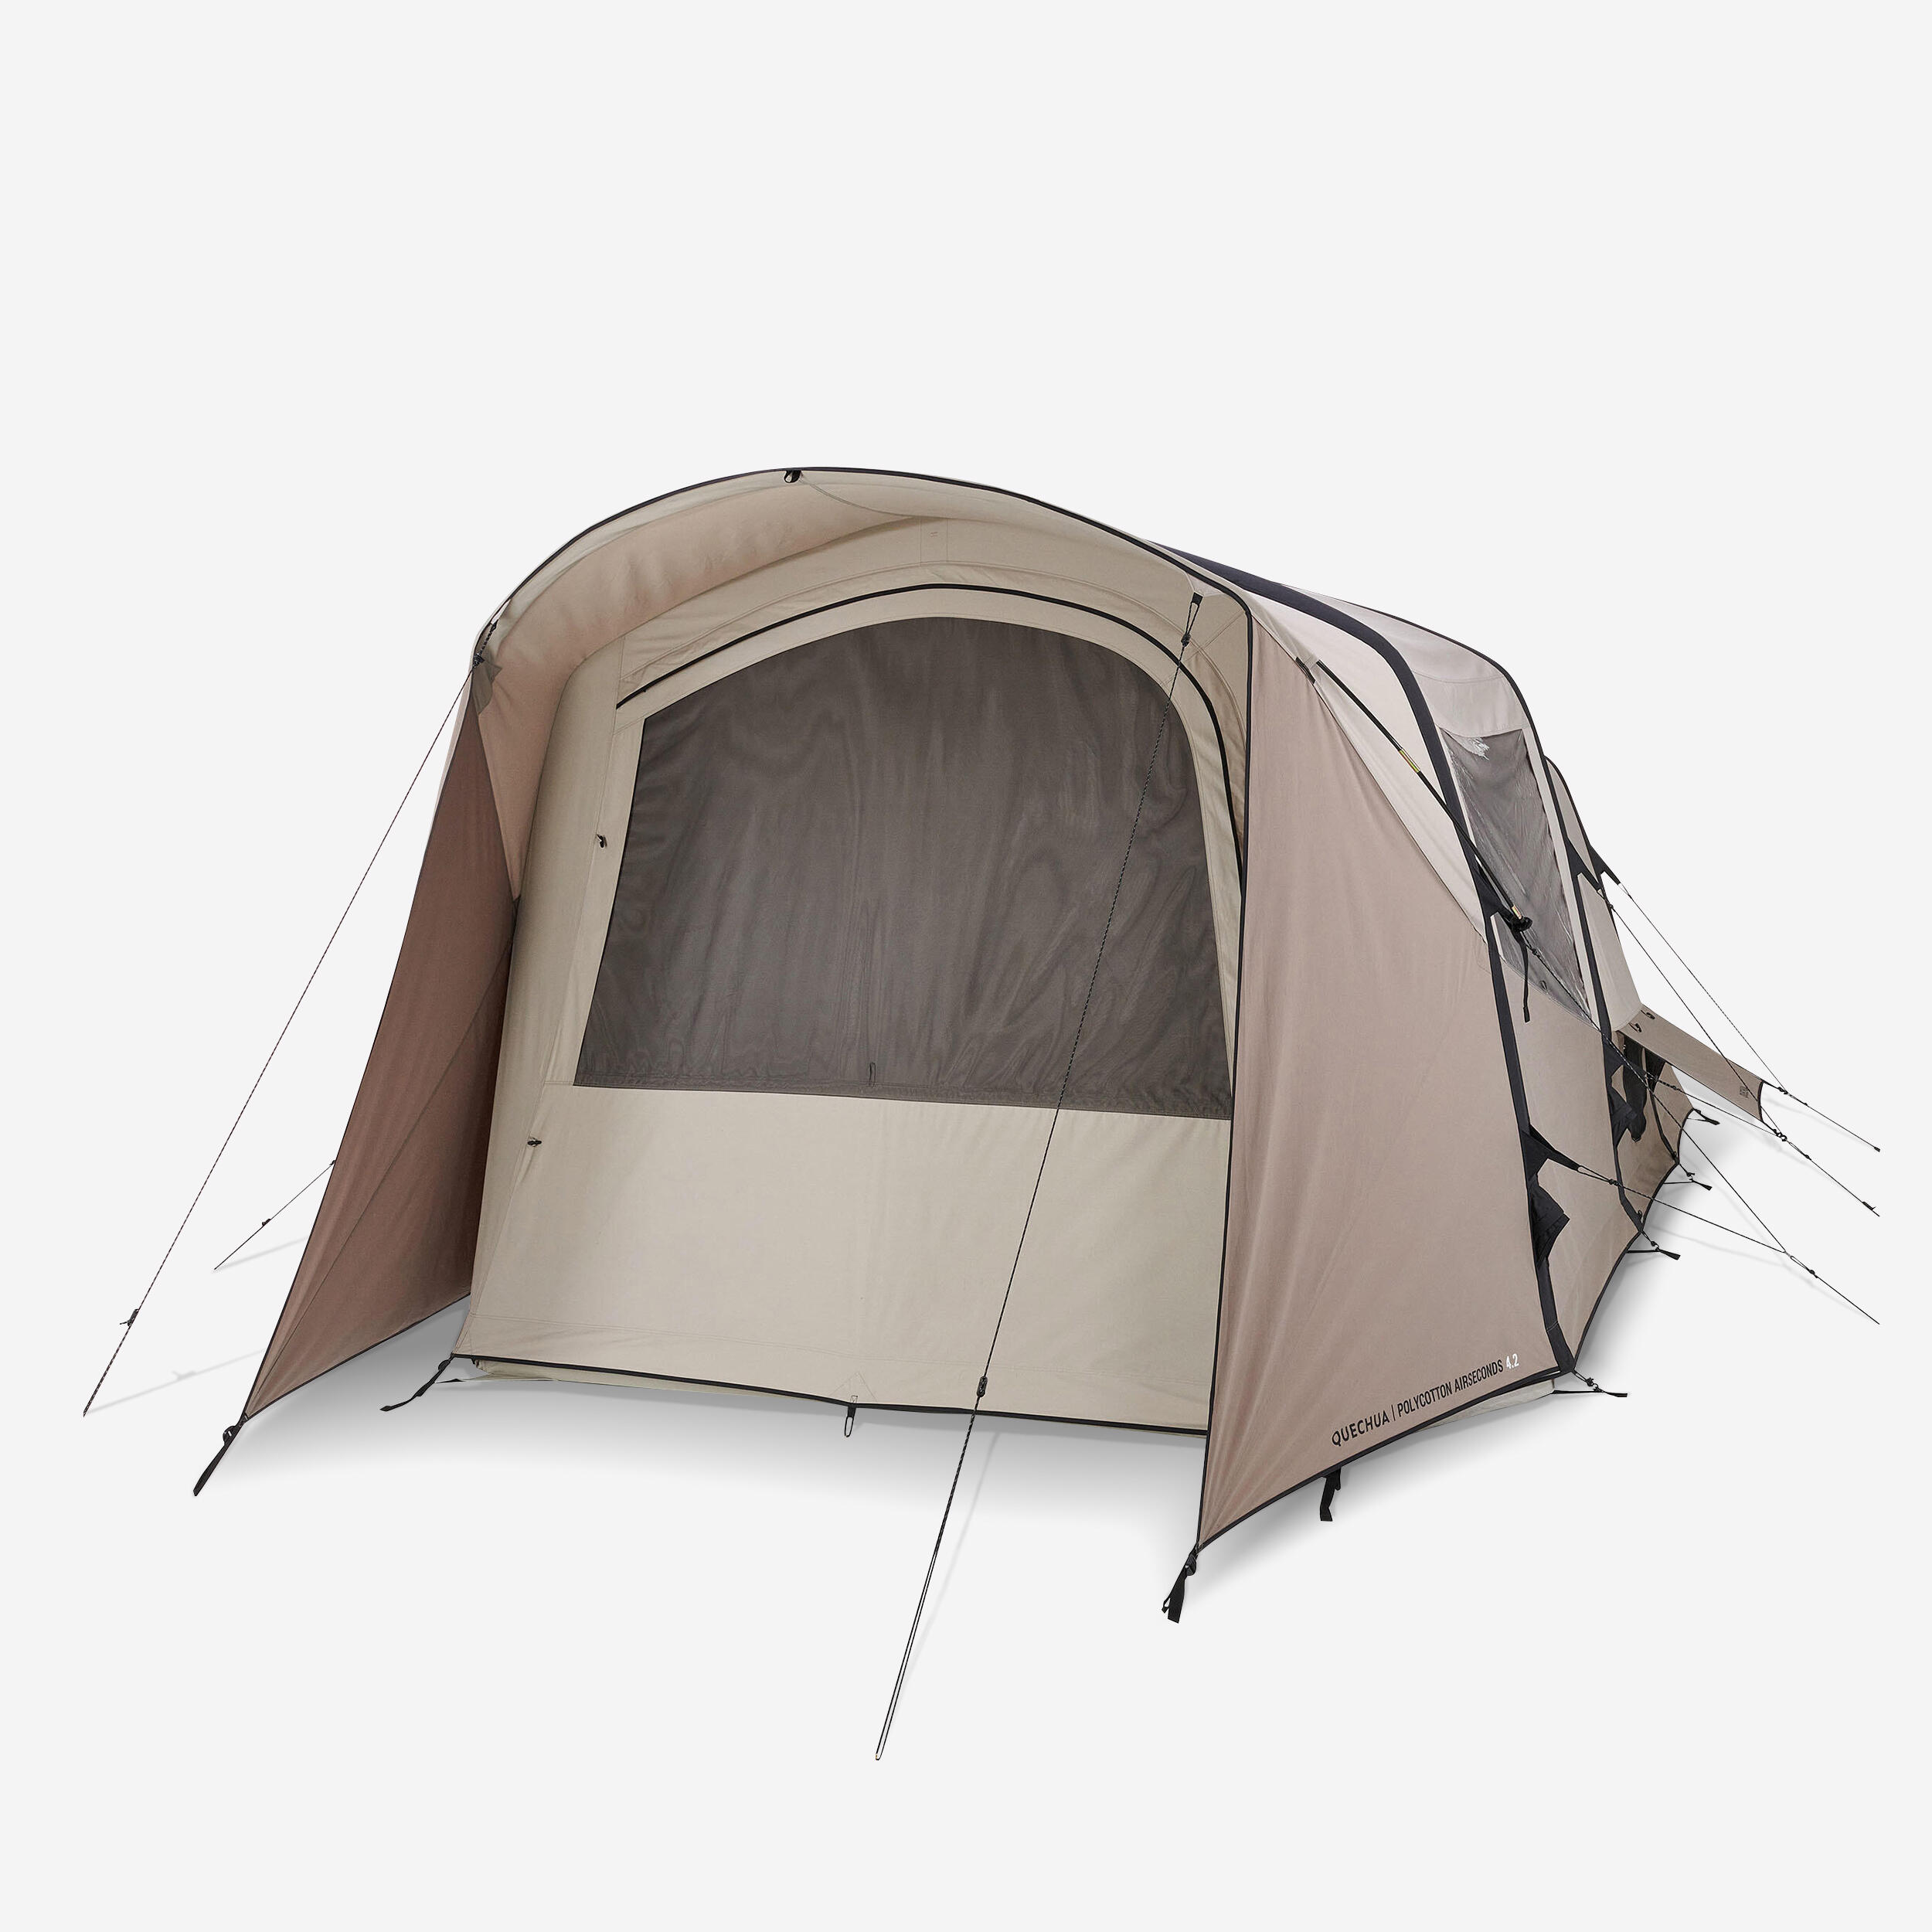 QUECHUA Tente Gonflable De Camping - Airseconds 4.2 Polycoton 4 Places 2 Chambres